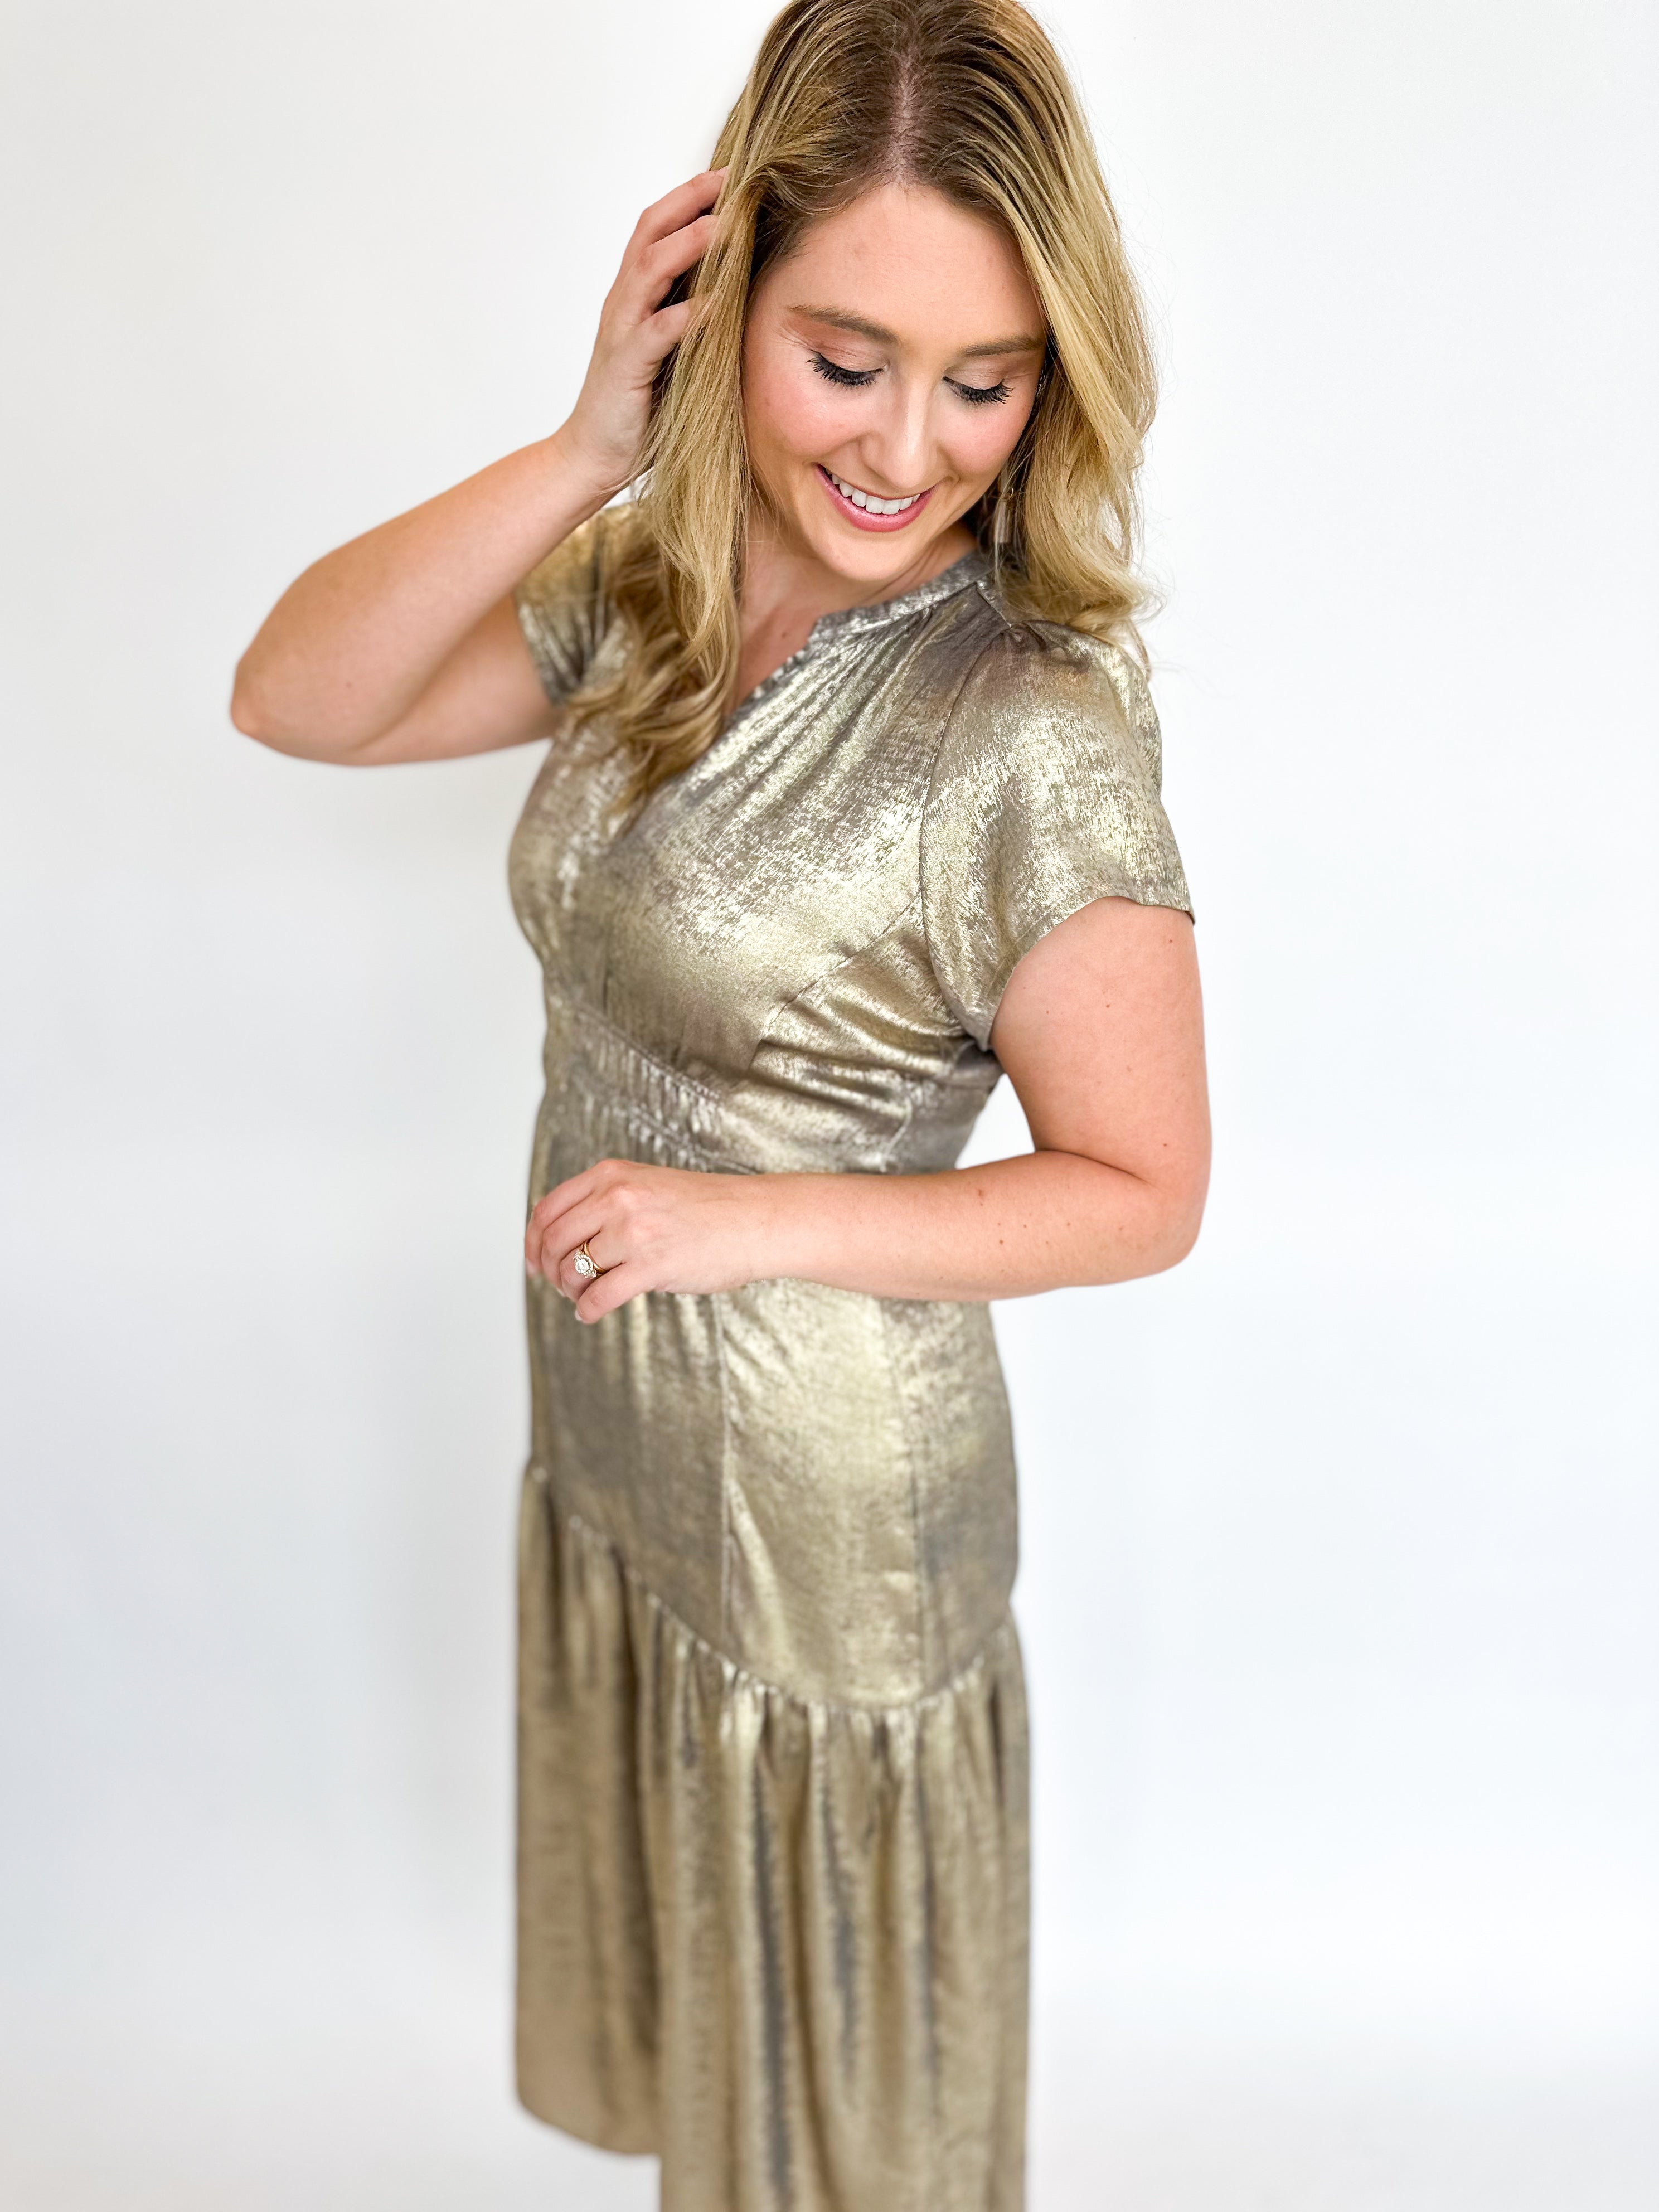 Silver & Gold Shine Midi Dress-500 Midi-GRADE & GATHER-July & June Women's Fashion Boutique Located in San Antonio, Texas